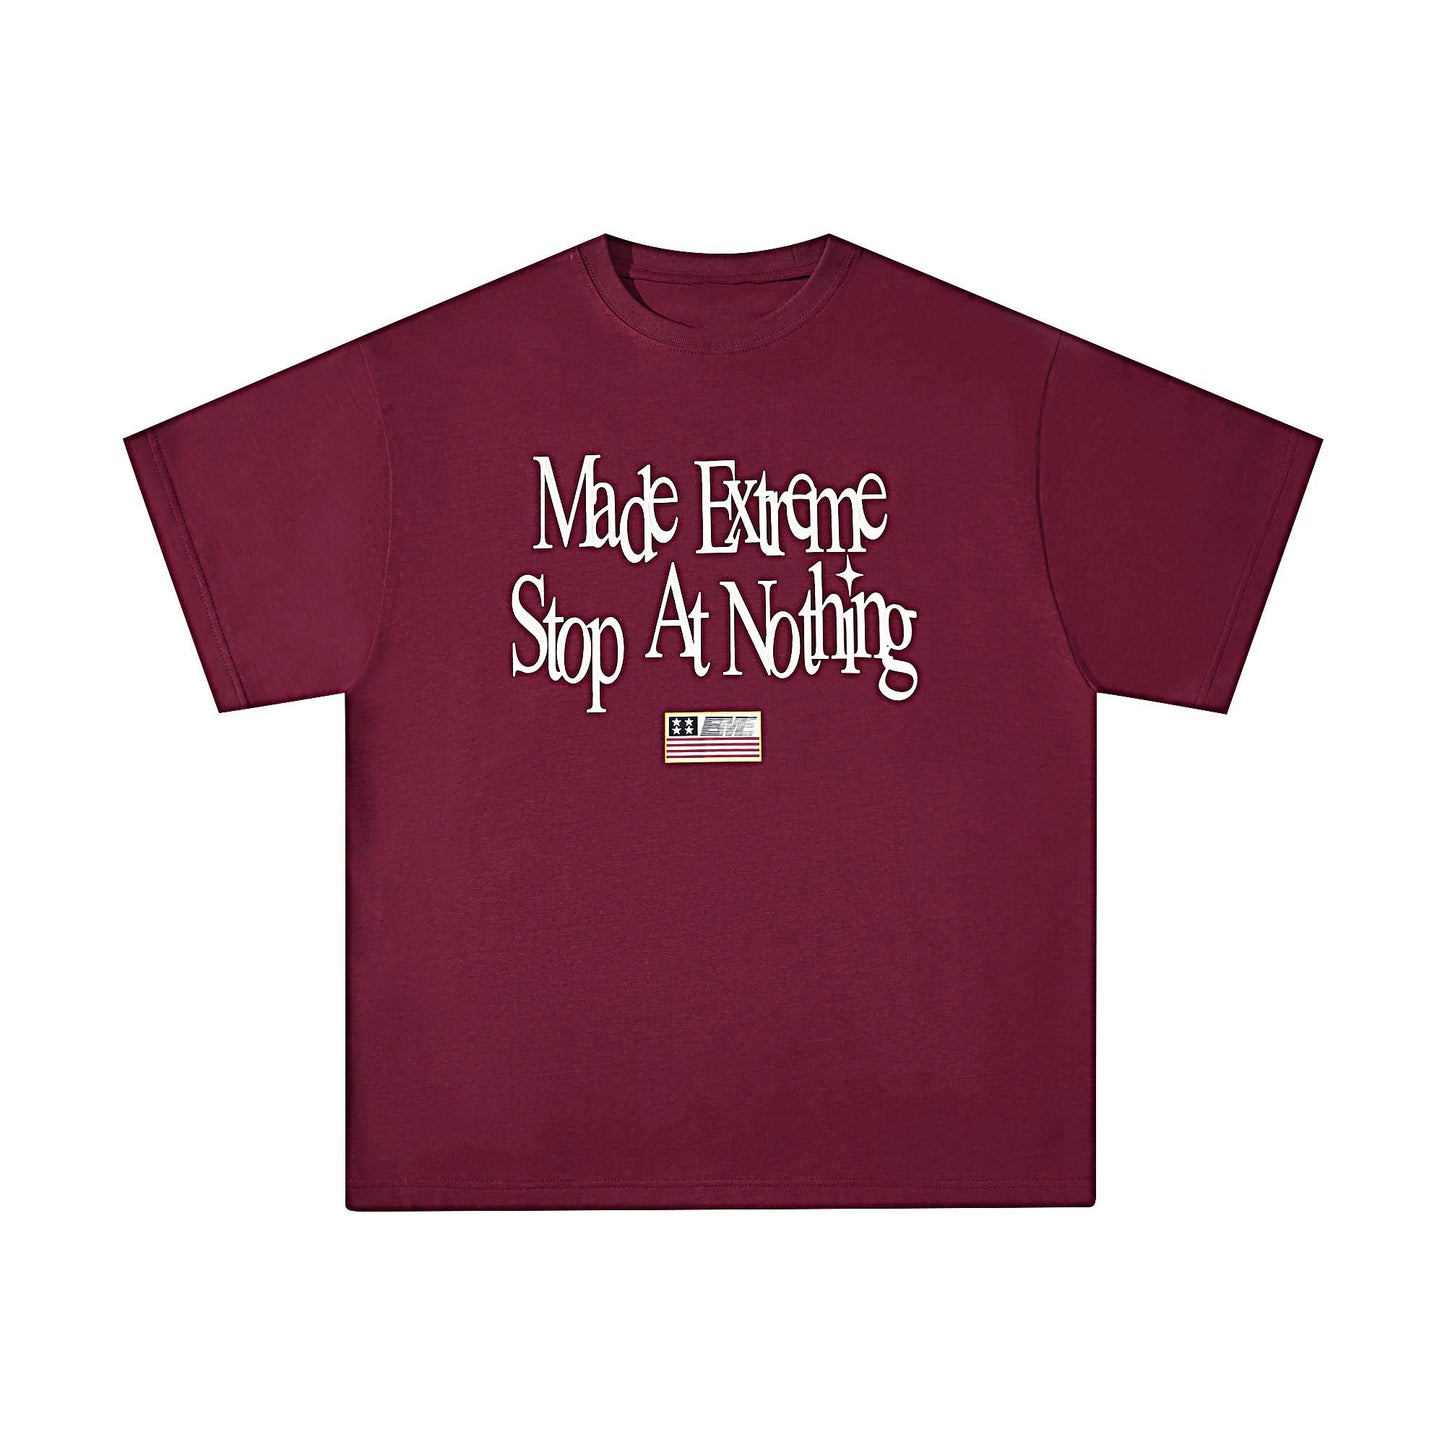 Merillard Graphic T-Shirt